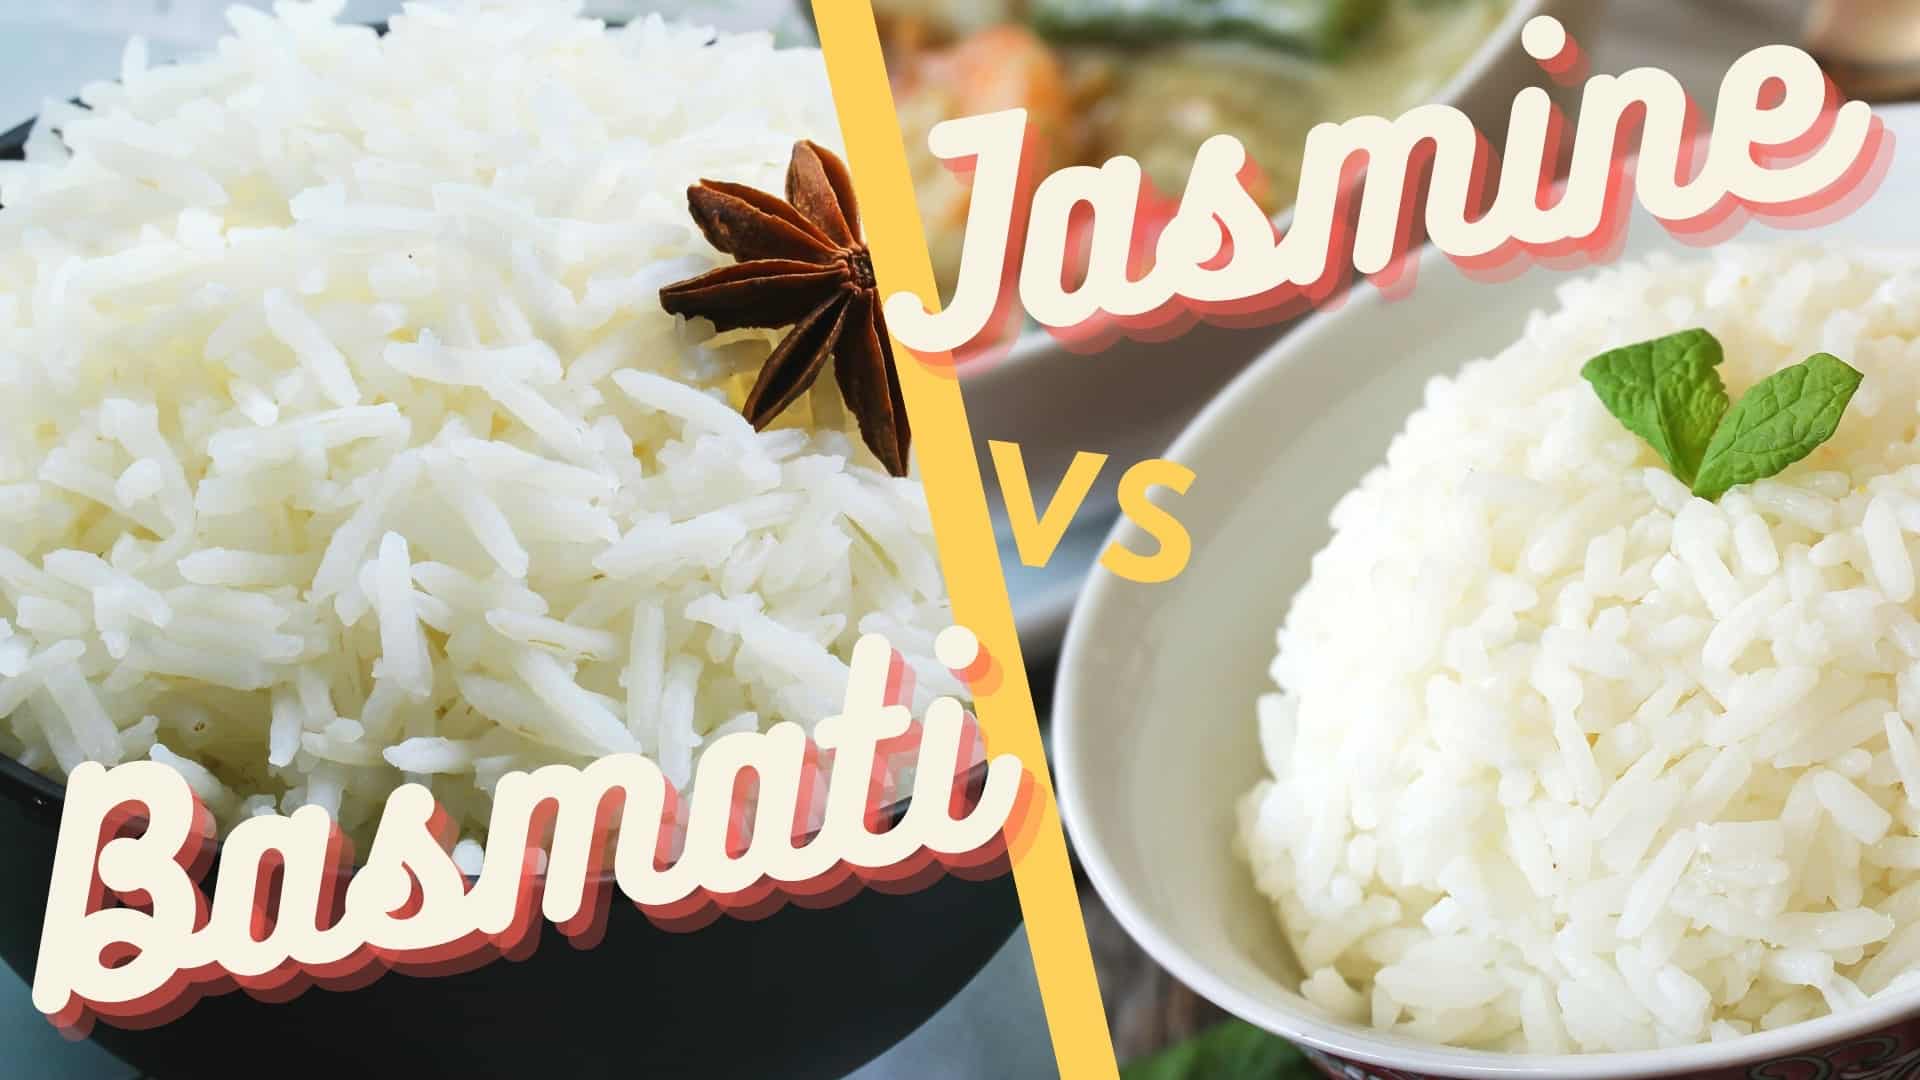 Raese ea Basmati vs jasmine